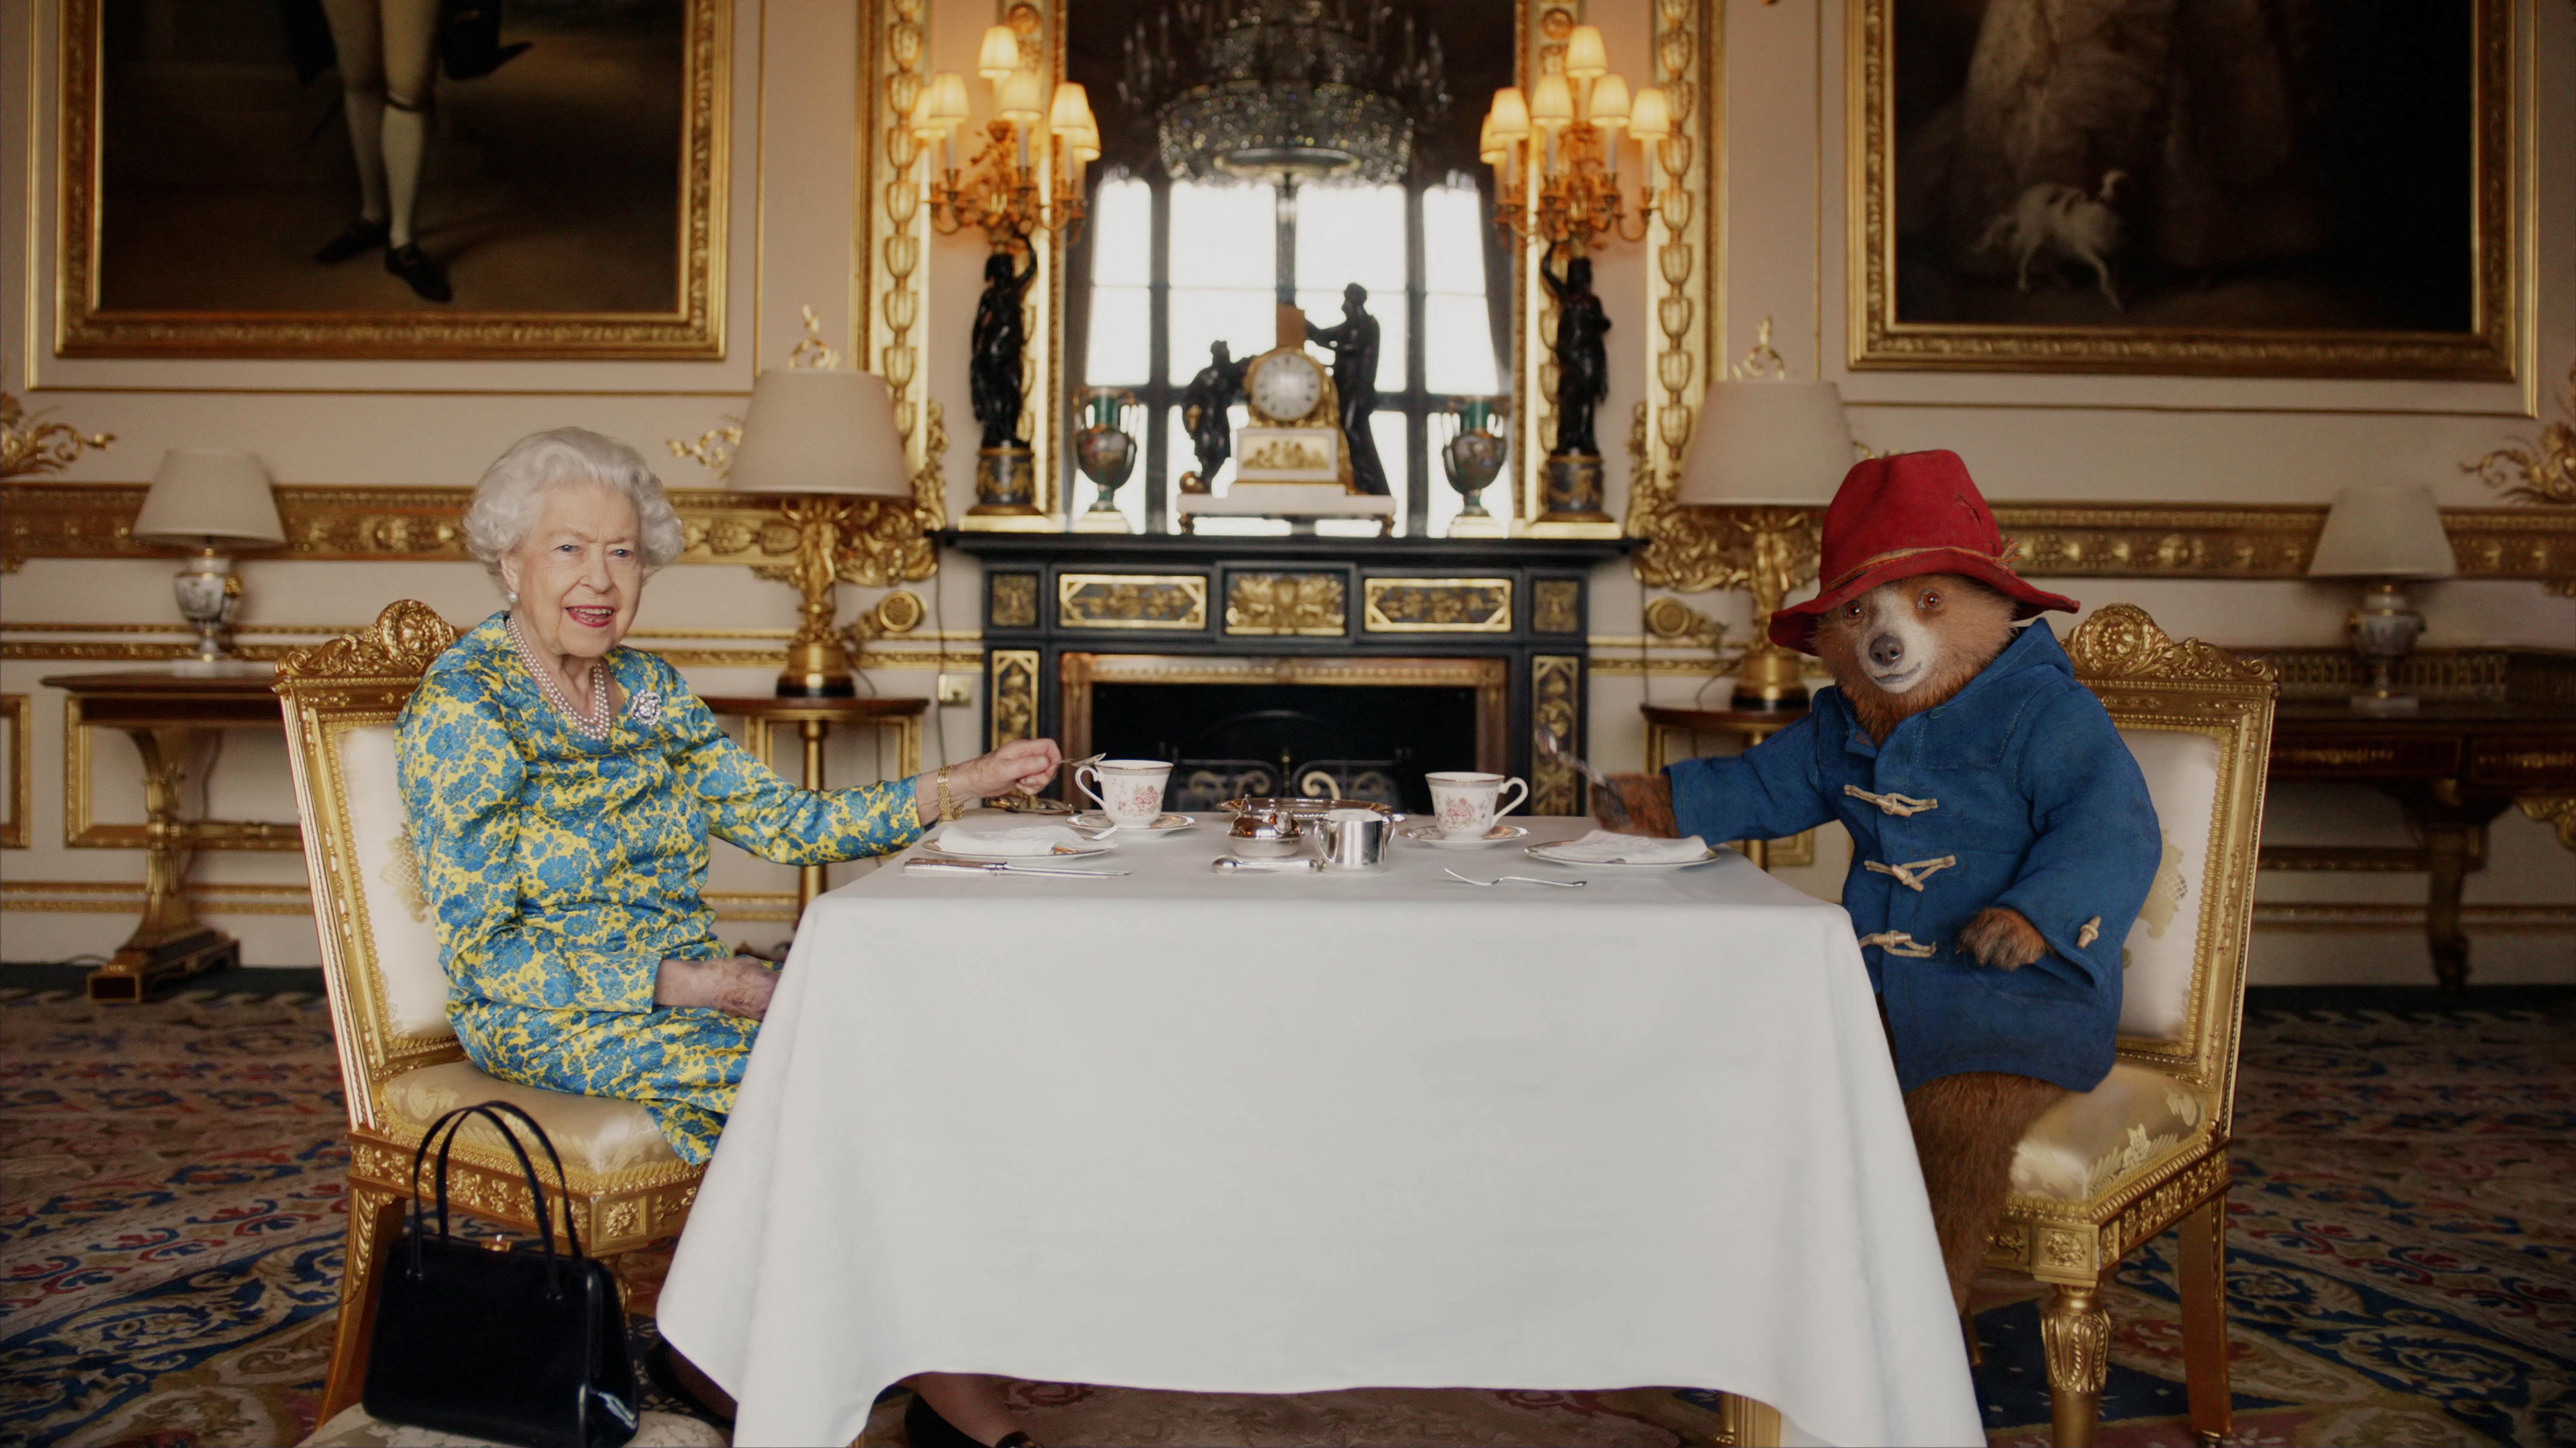 الملكة البريطانية الراحلة إليزابيث و"الدب بادينغتون" يتناولان الشاي في قصر باكنغهام، من فيلم تم عرضه خلال حفلة اليوبيل البلاتيني للملكة التي بثتها بي بي سي